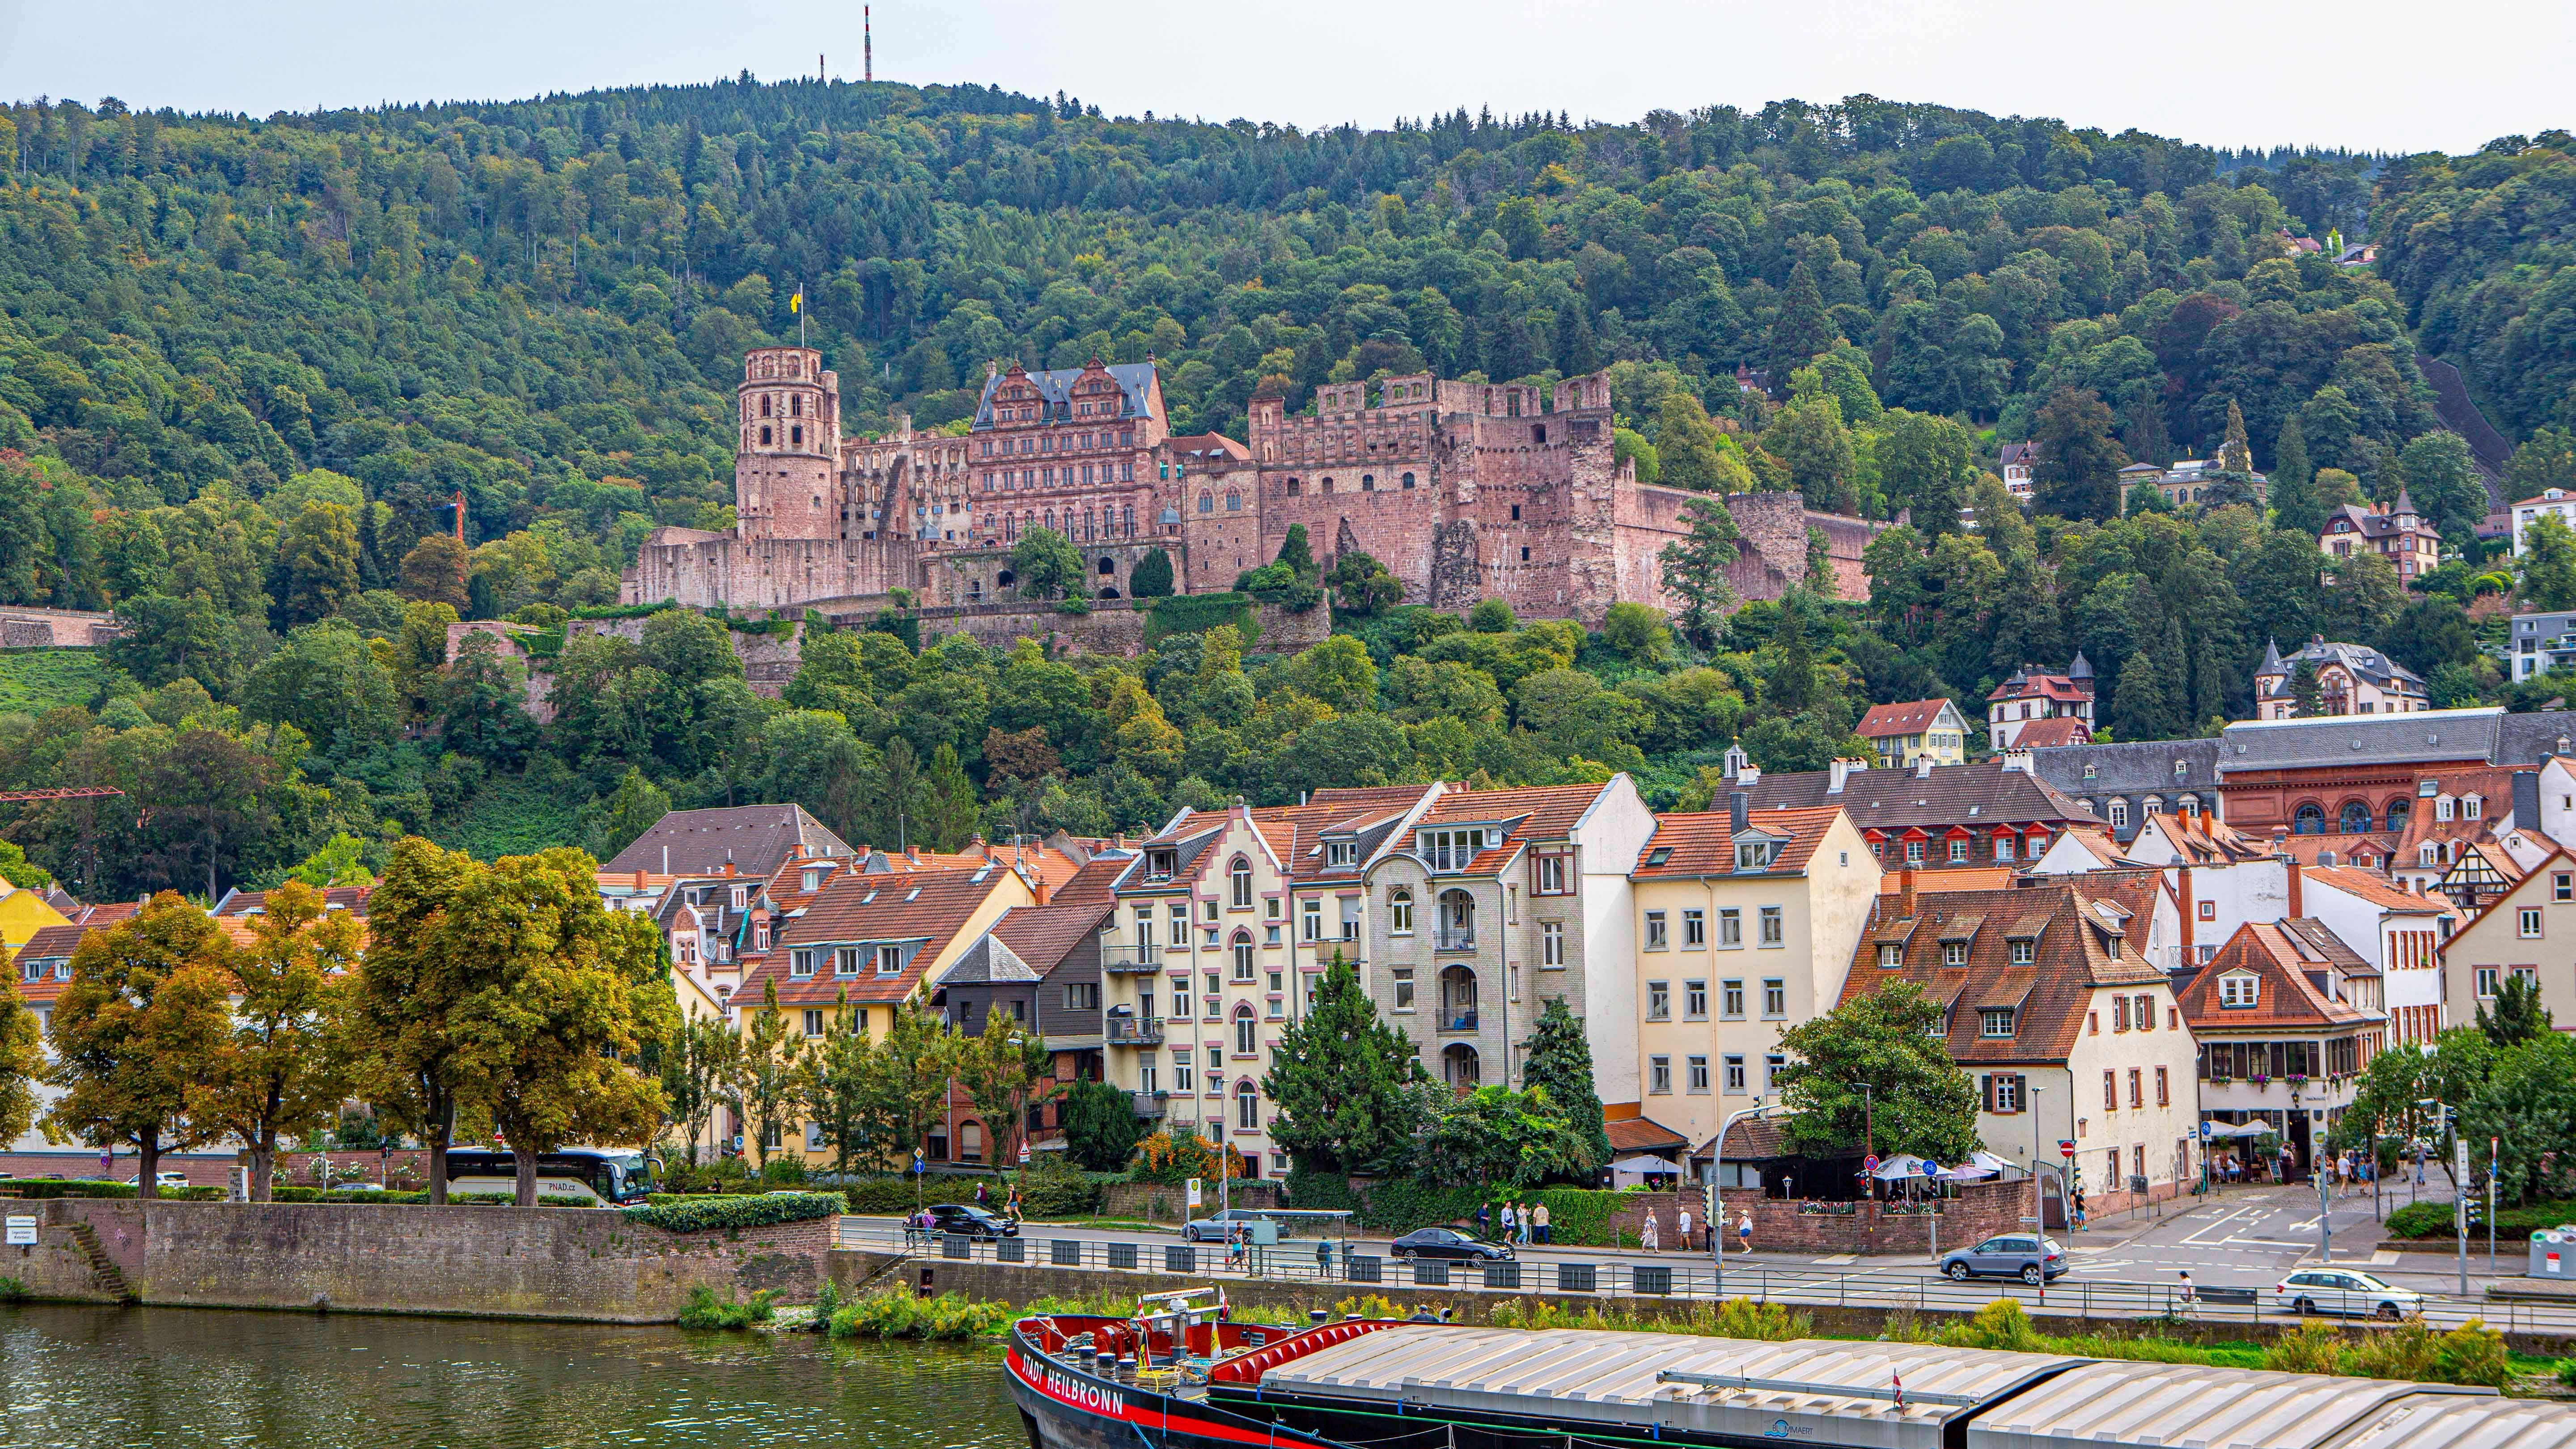 Im Keller des Schloss Heidelberg befindet sich eines der größten Weinfässer der Welt. Es hat eine Kapazität von etwa 220.000 Litern (58.124 Gallonen).